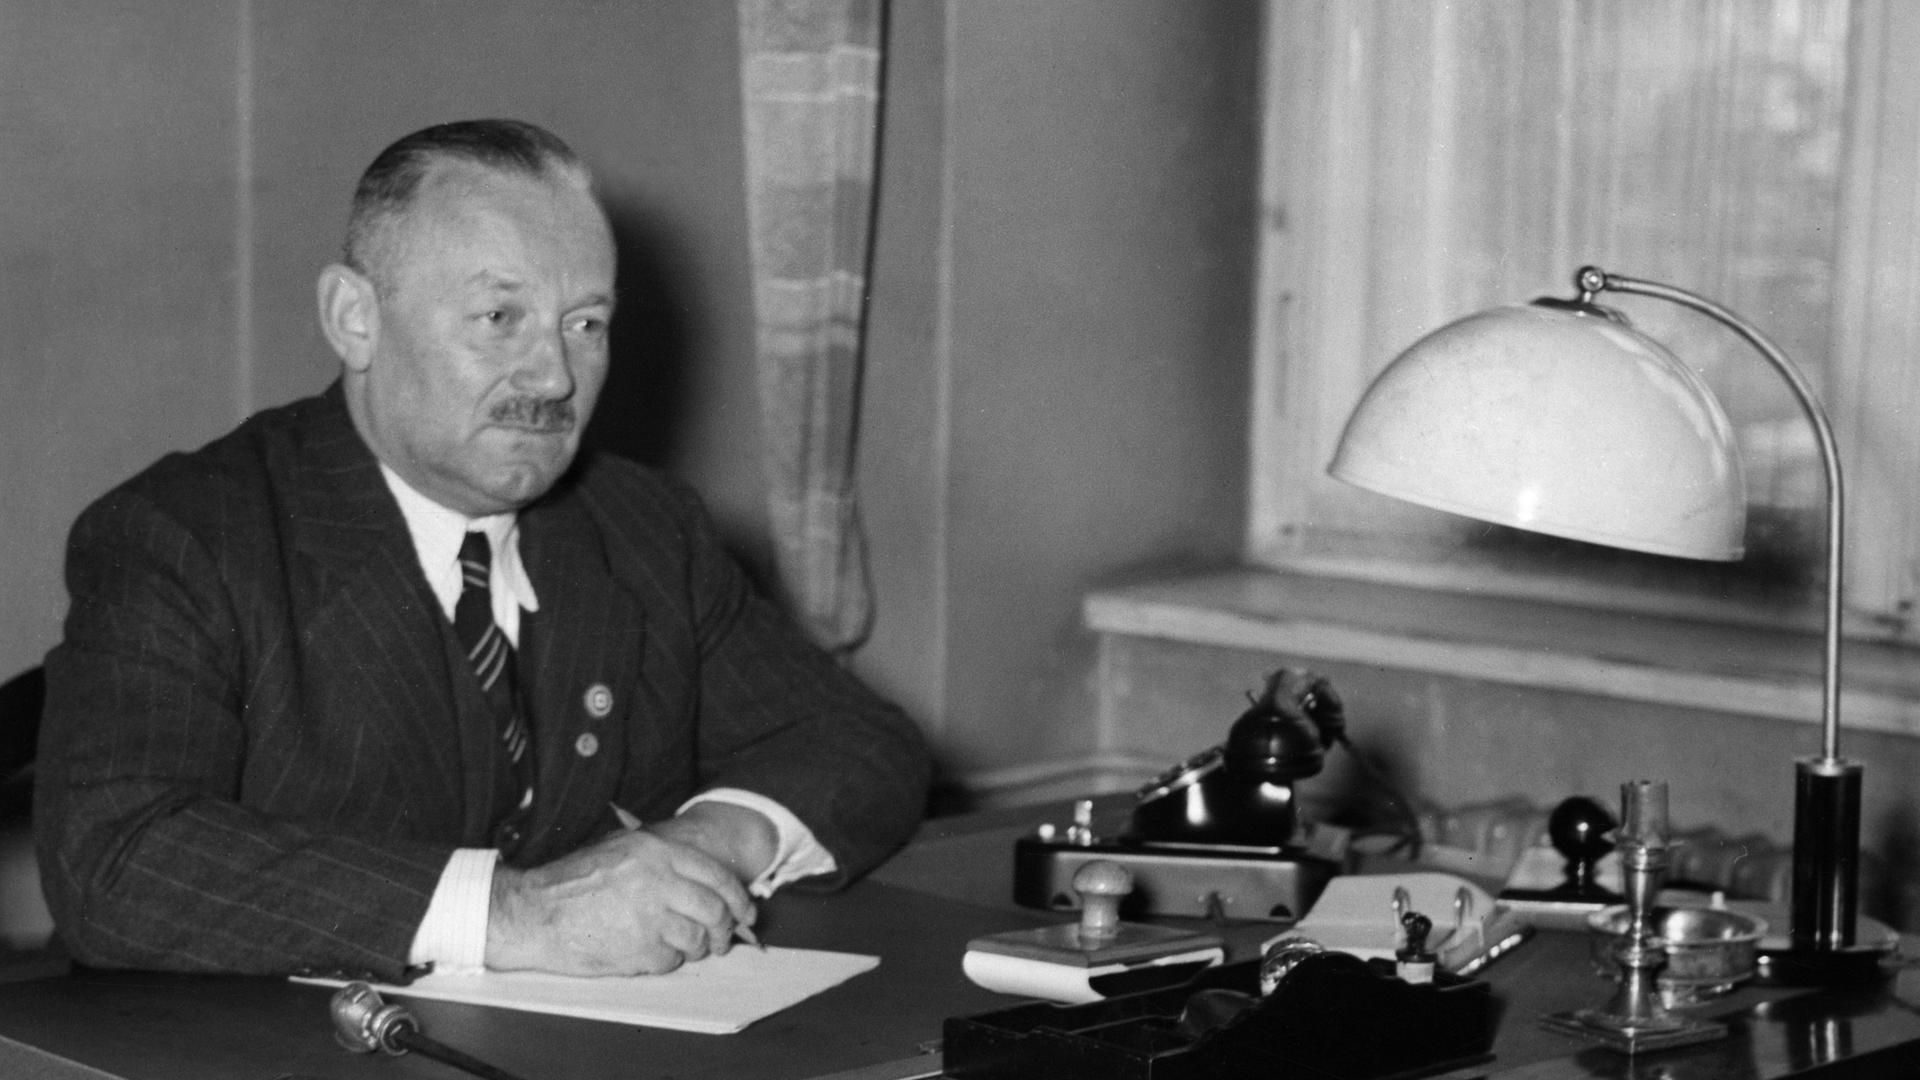 Manfred von Killinger, Porträt am Schreibtisch, als neuernannter Gesandter für die Slowakei, vom 30.07.1940.